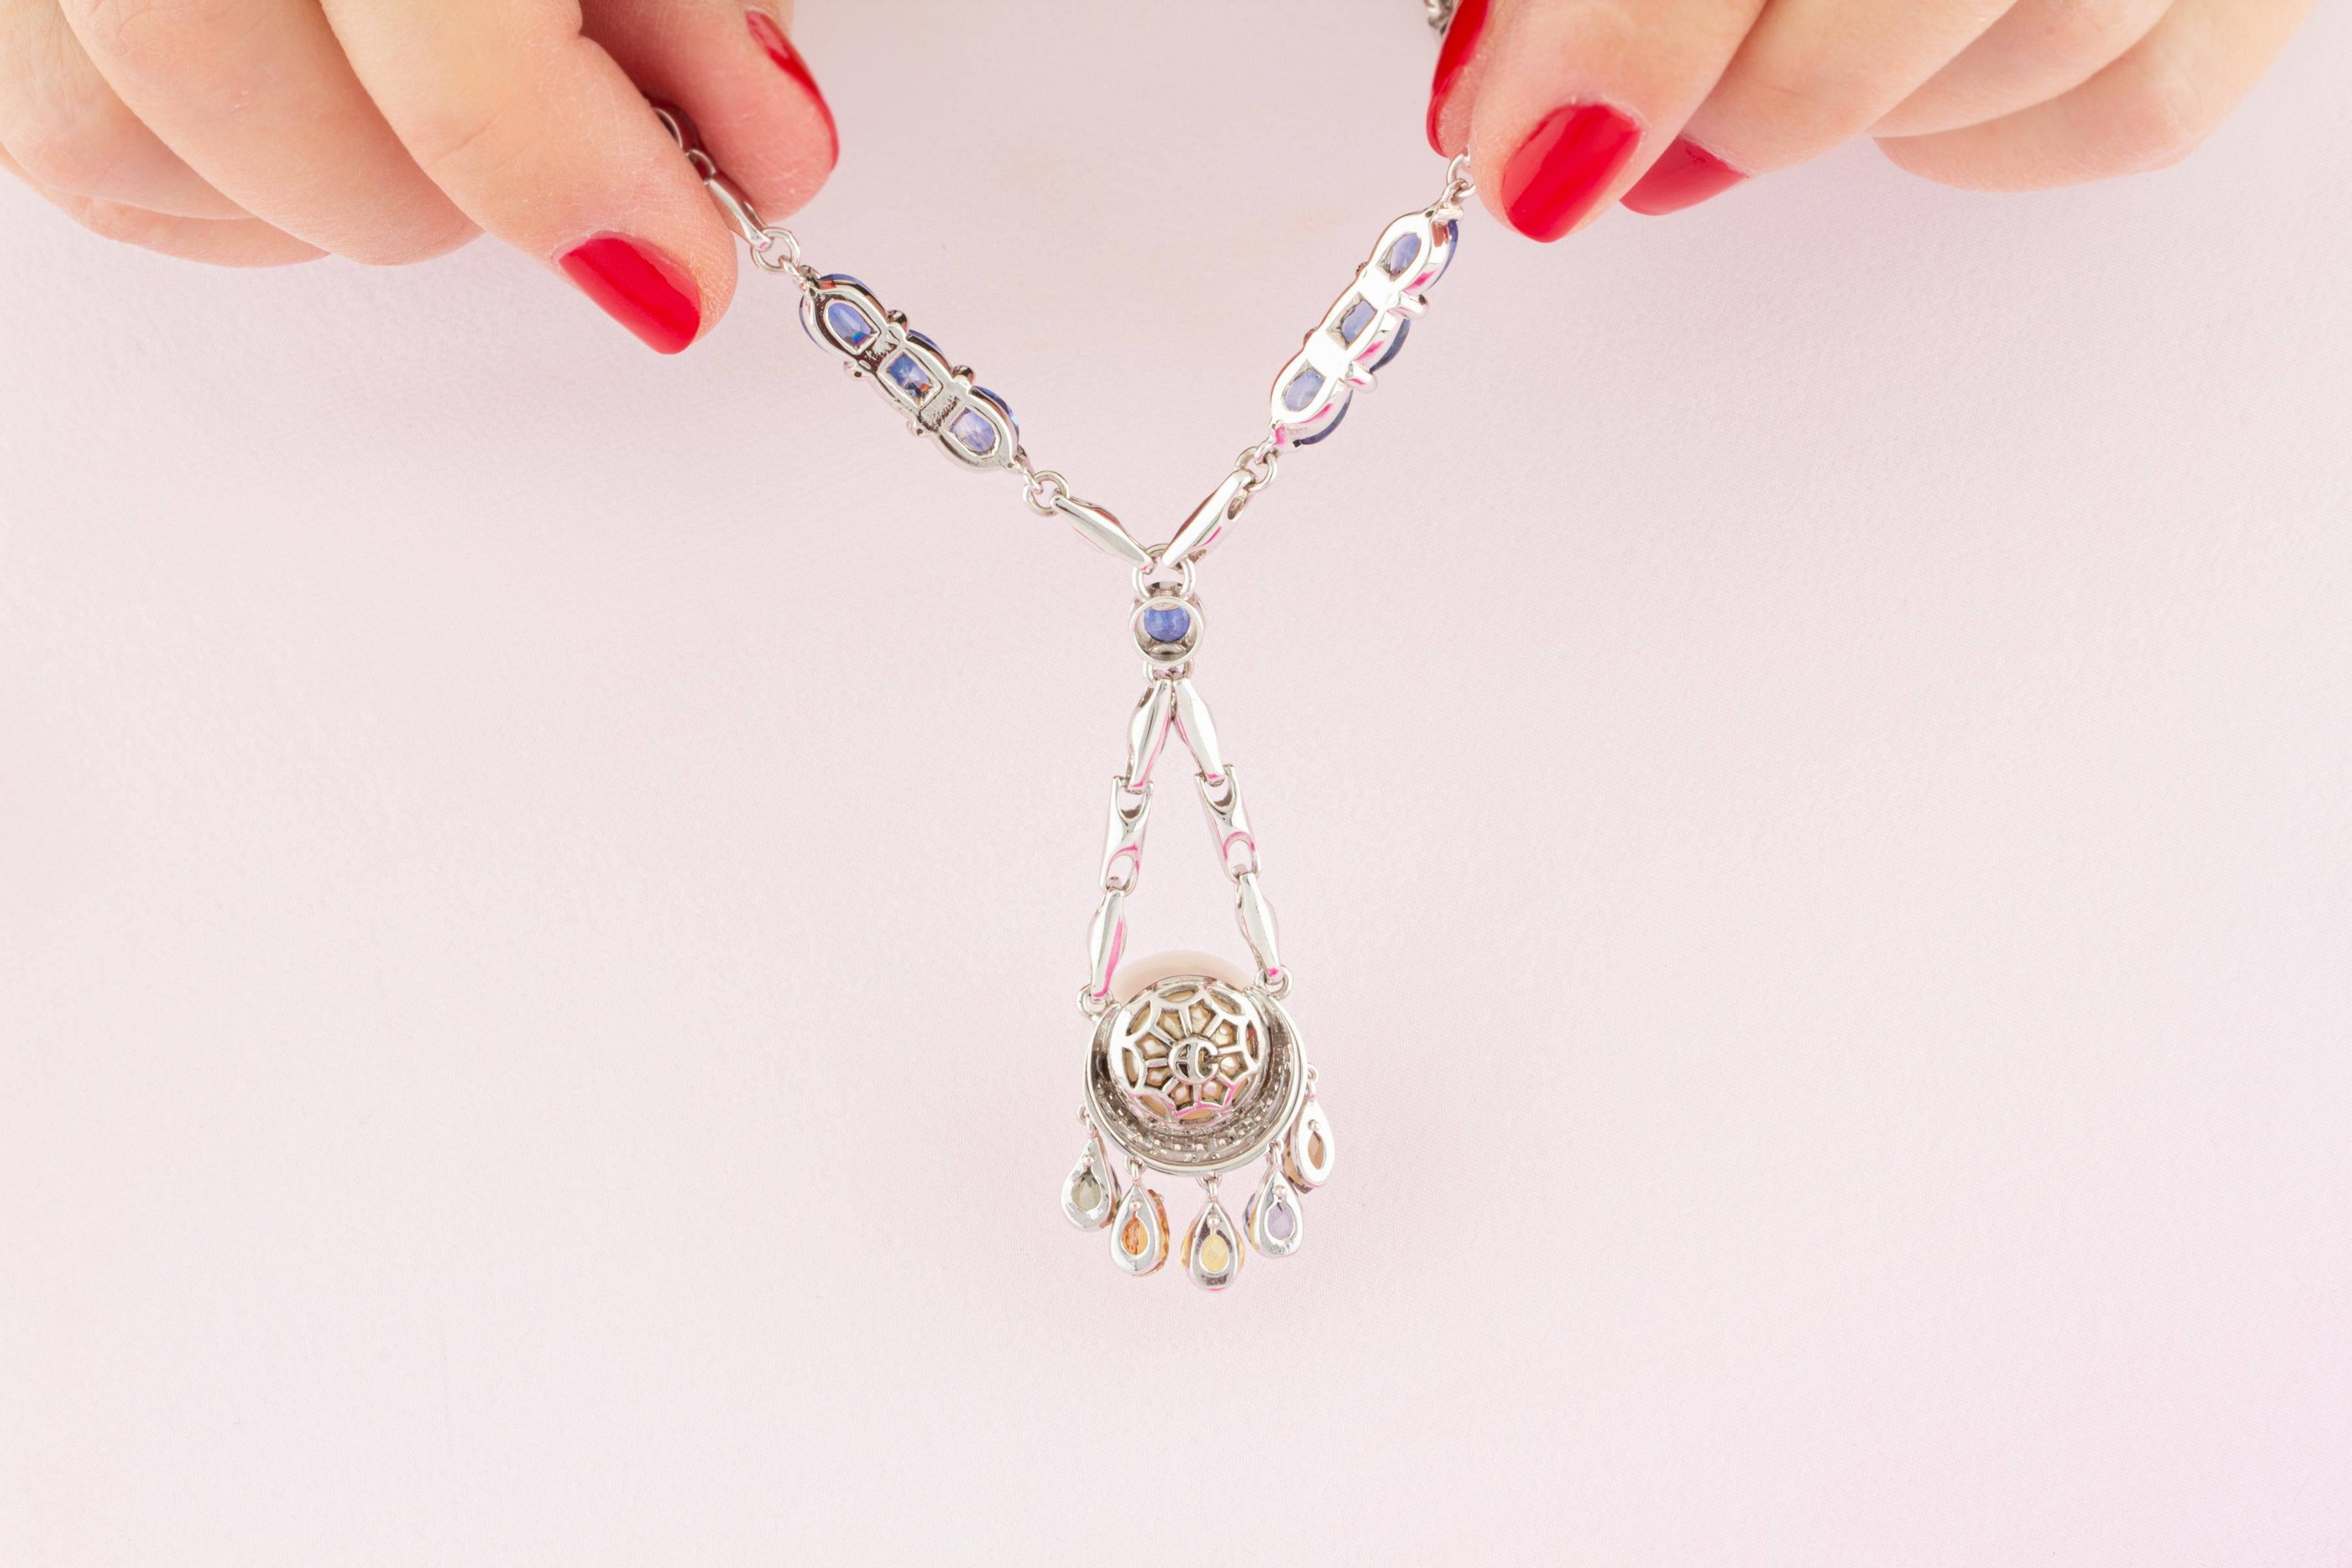 Brilliant Cut Ella Gafter Sapphire Diamond Pearl Pendant Necklace For Sale